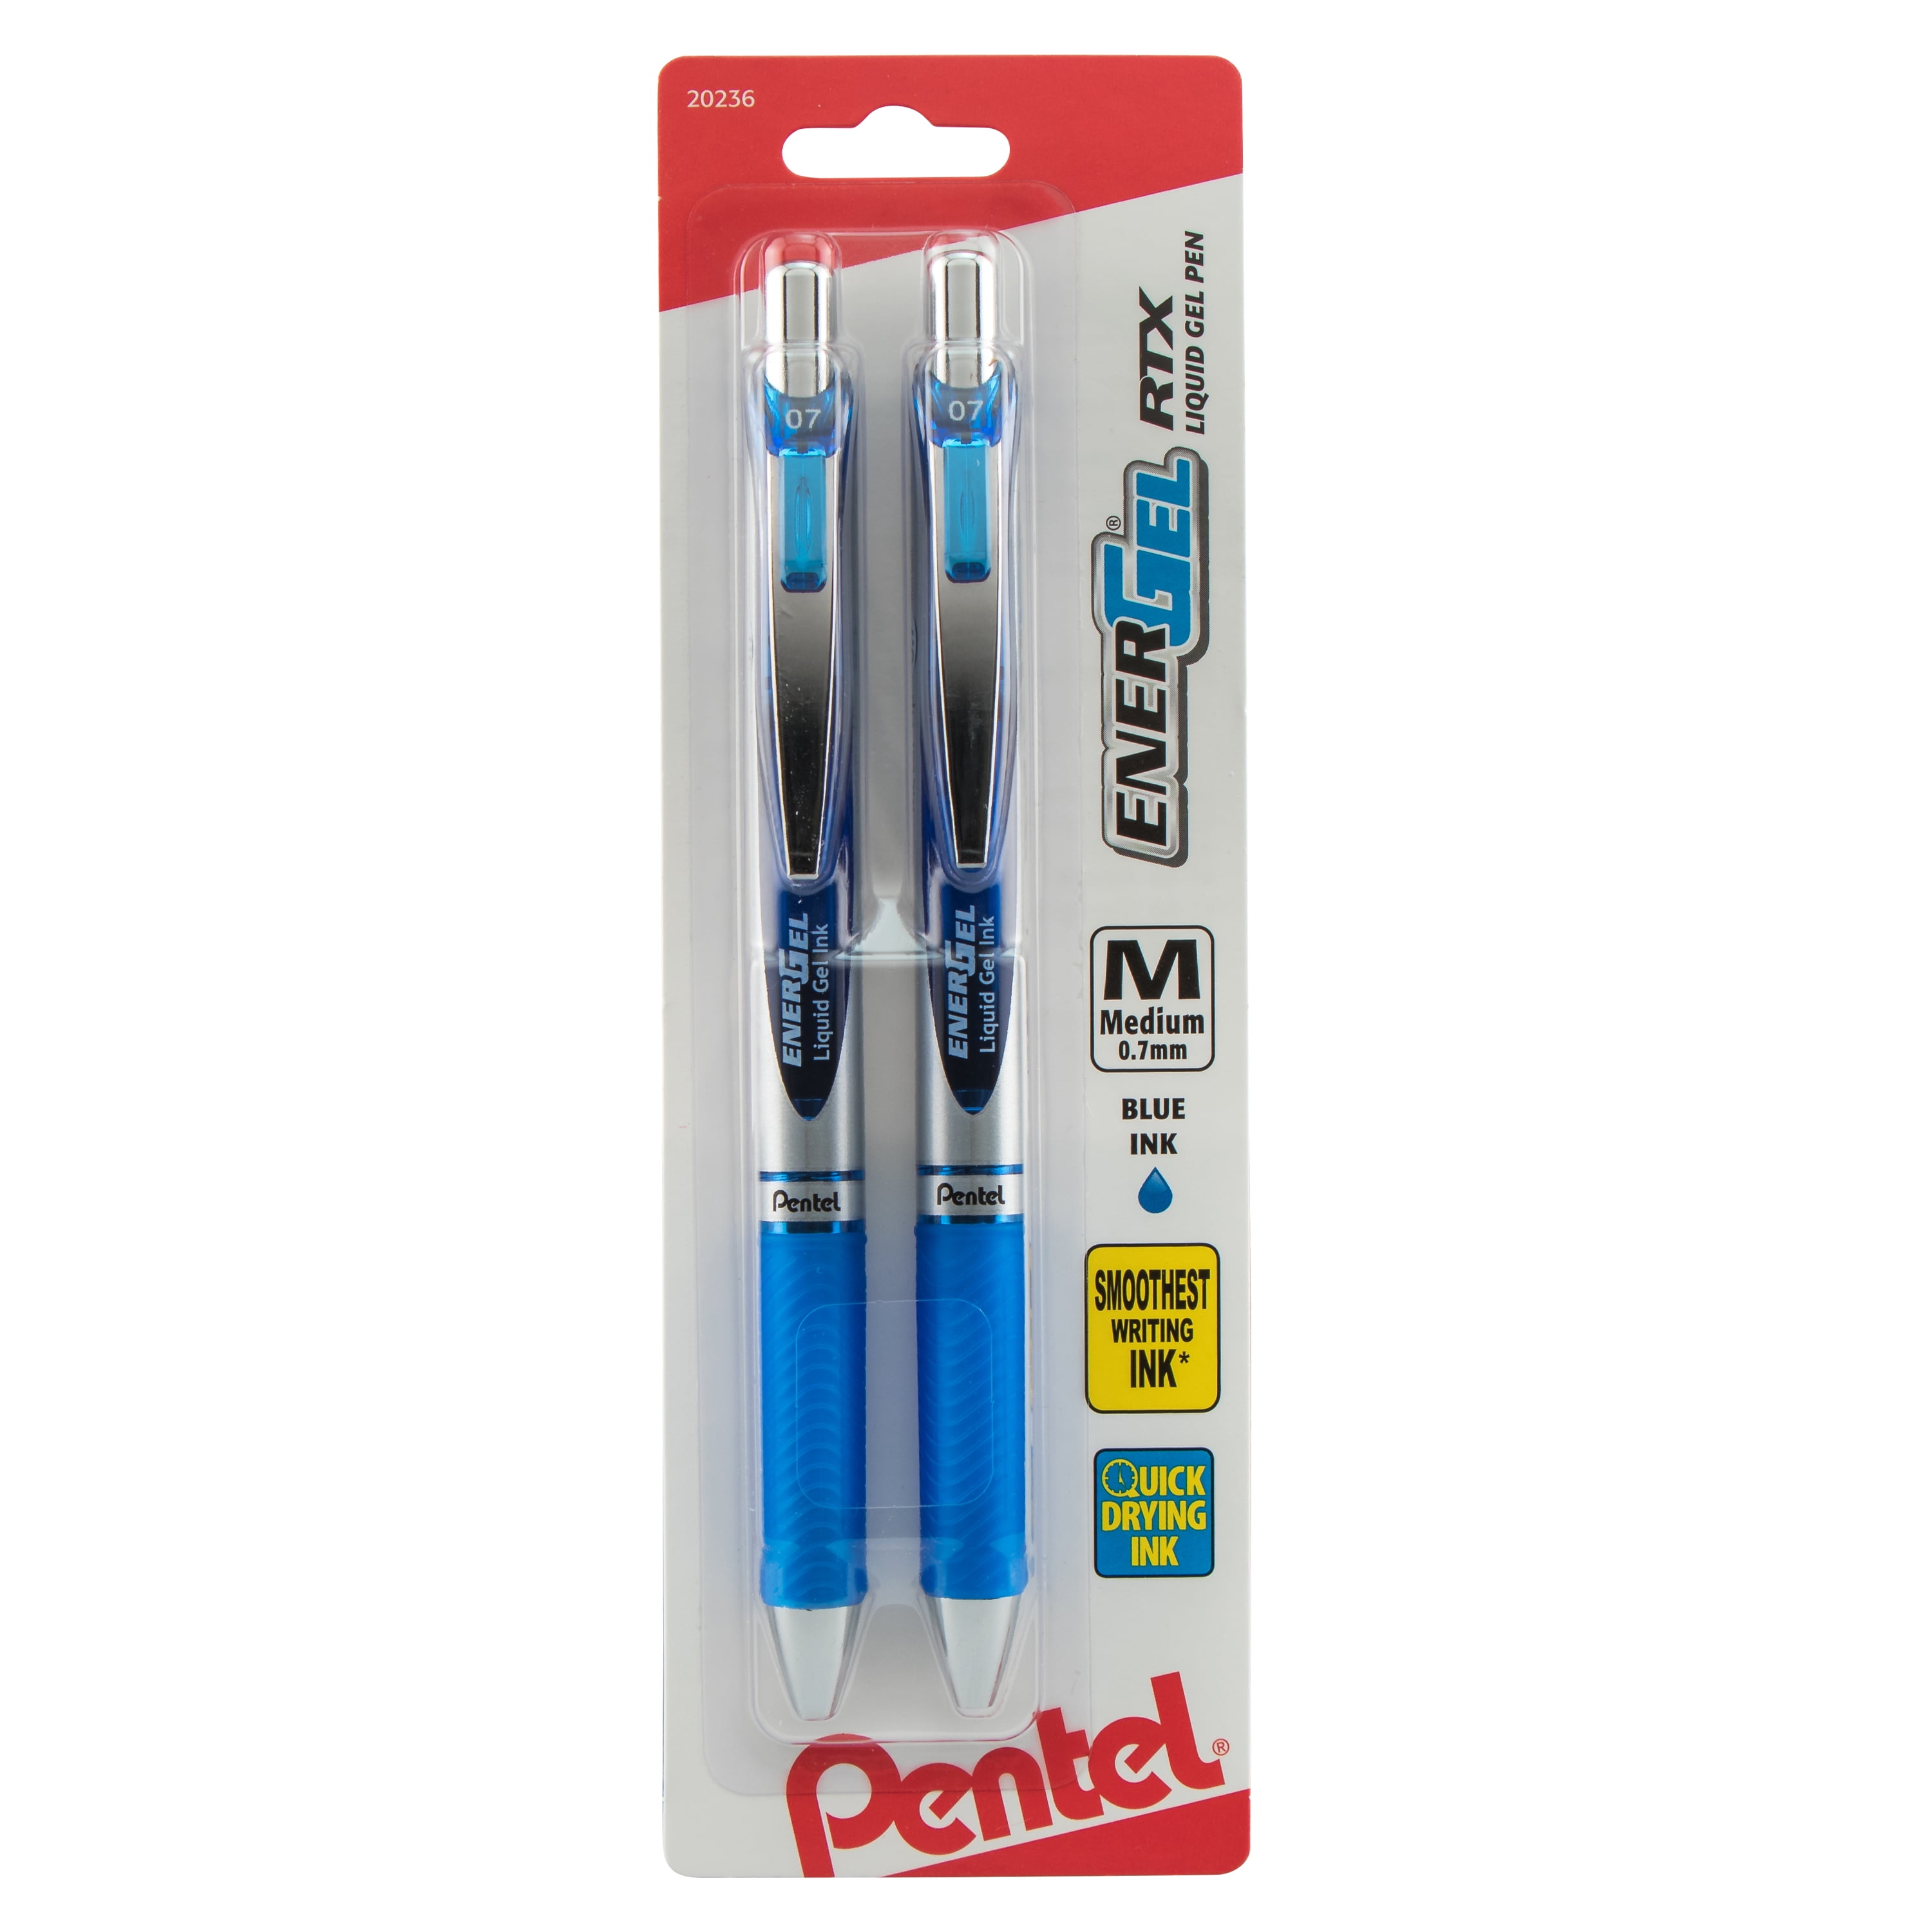 Je zal beter worden karbonade Ass Pentel EnerGel RTX Retractable Liquid Gel Pen, (0.7mm) Metal Tip, Medium  Line, Blue 2-Pk - Walmart.com